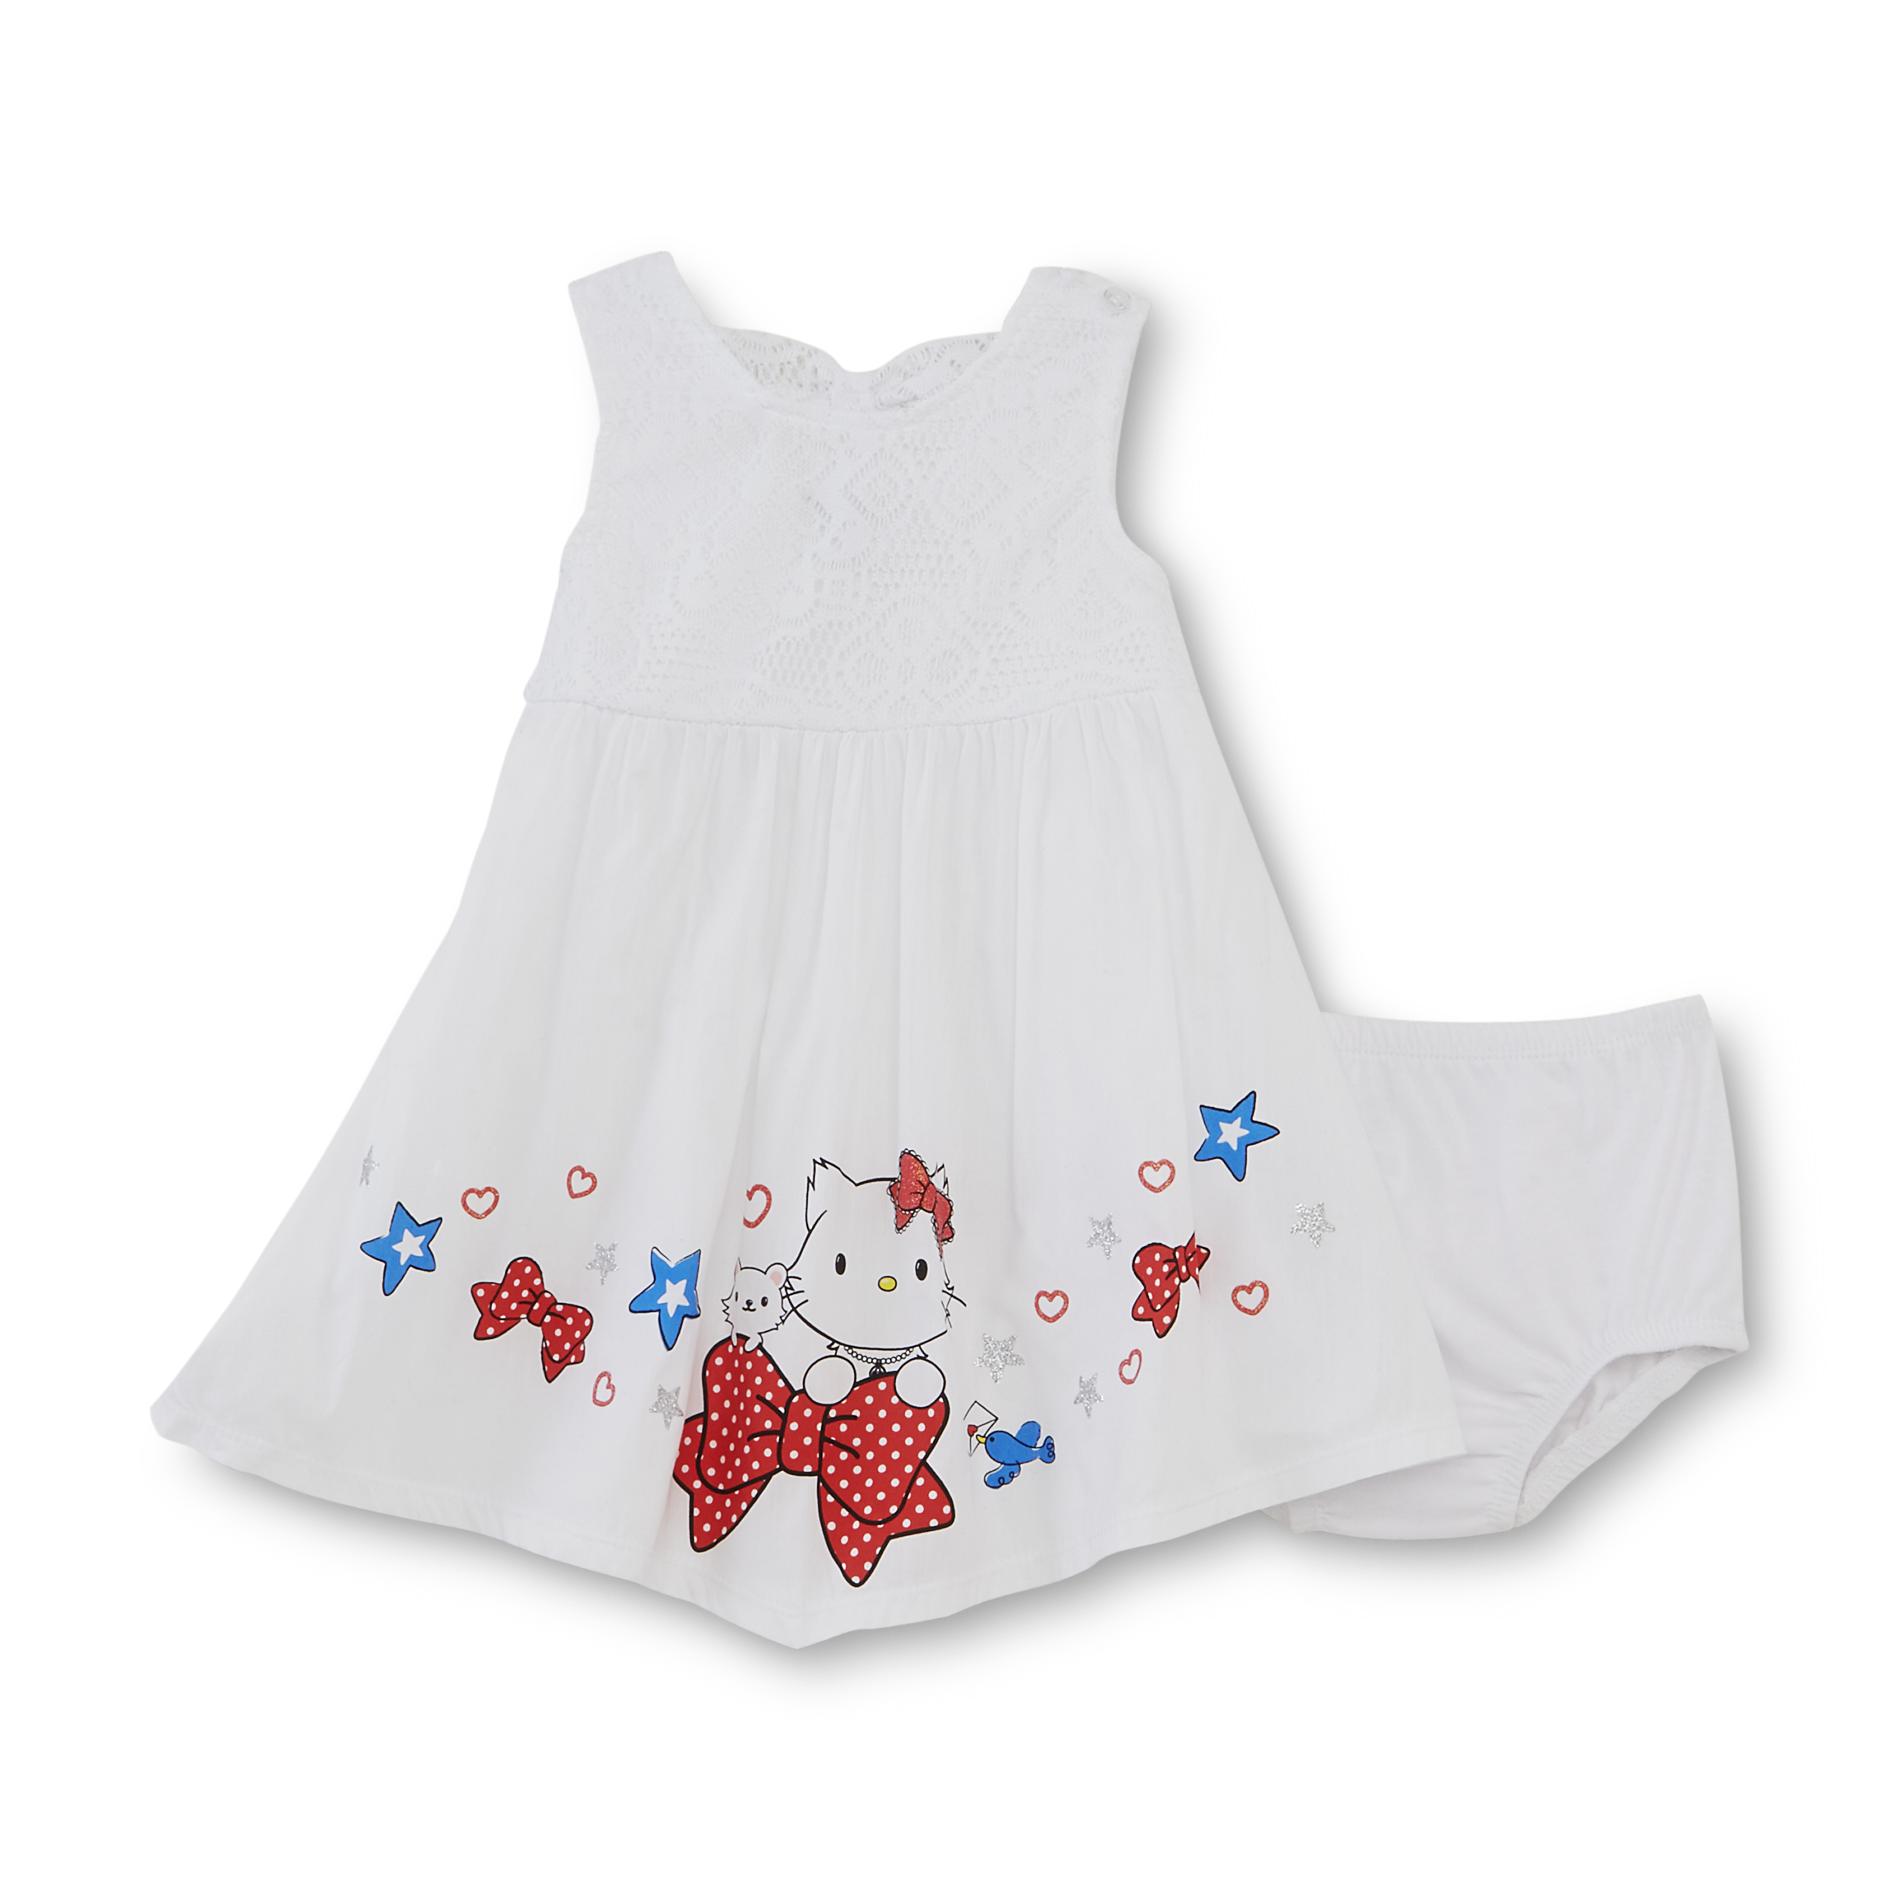 Sanrio Charmmykitty Infant & Toddler Girl's Crochet Dress